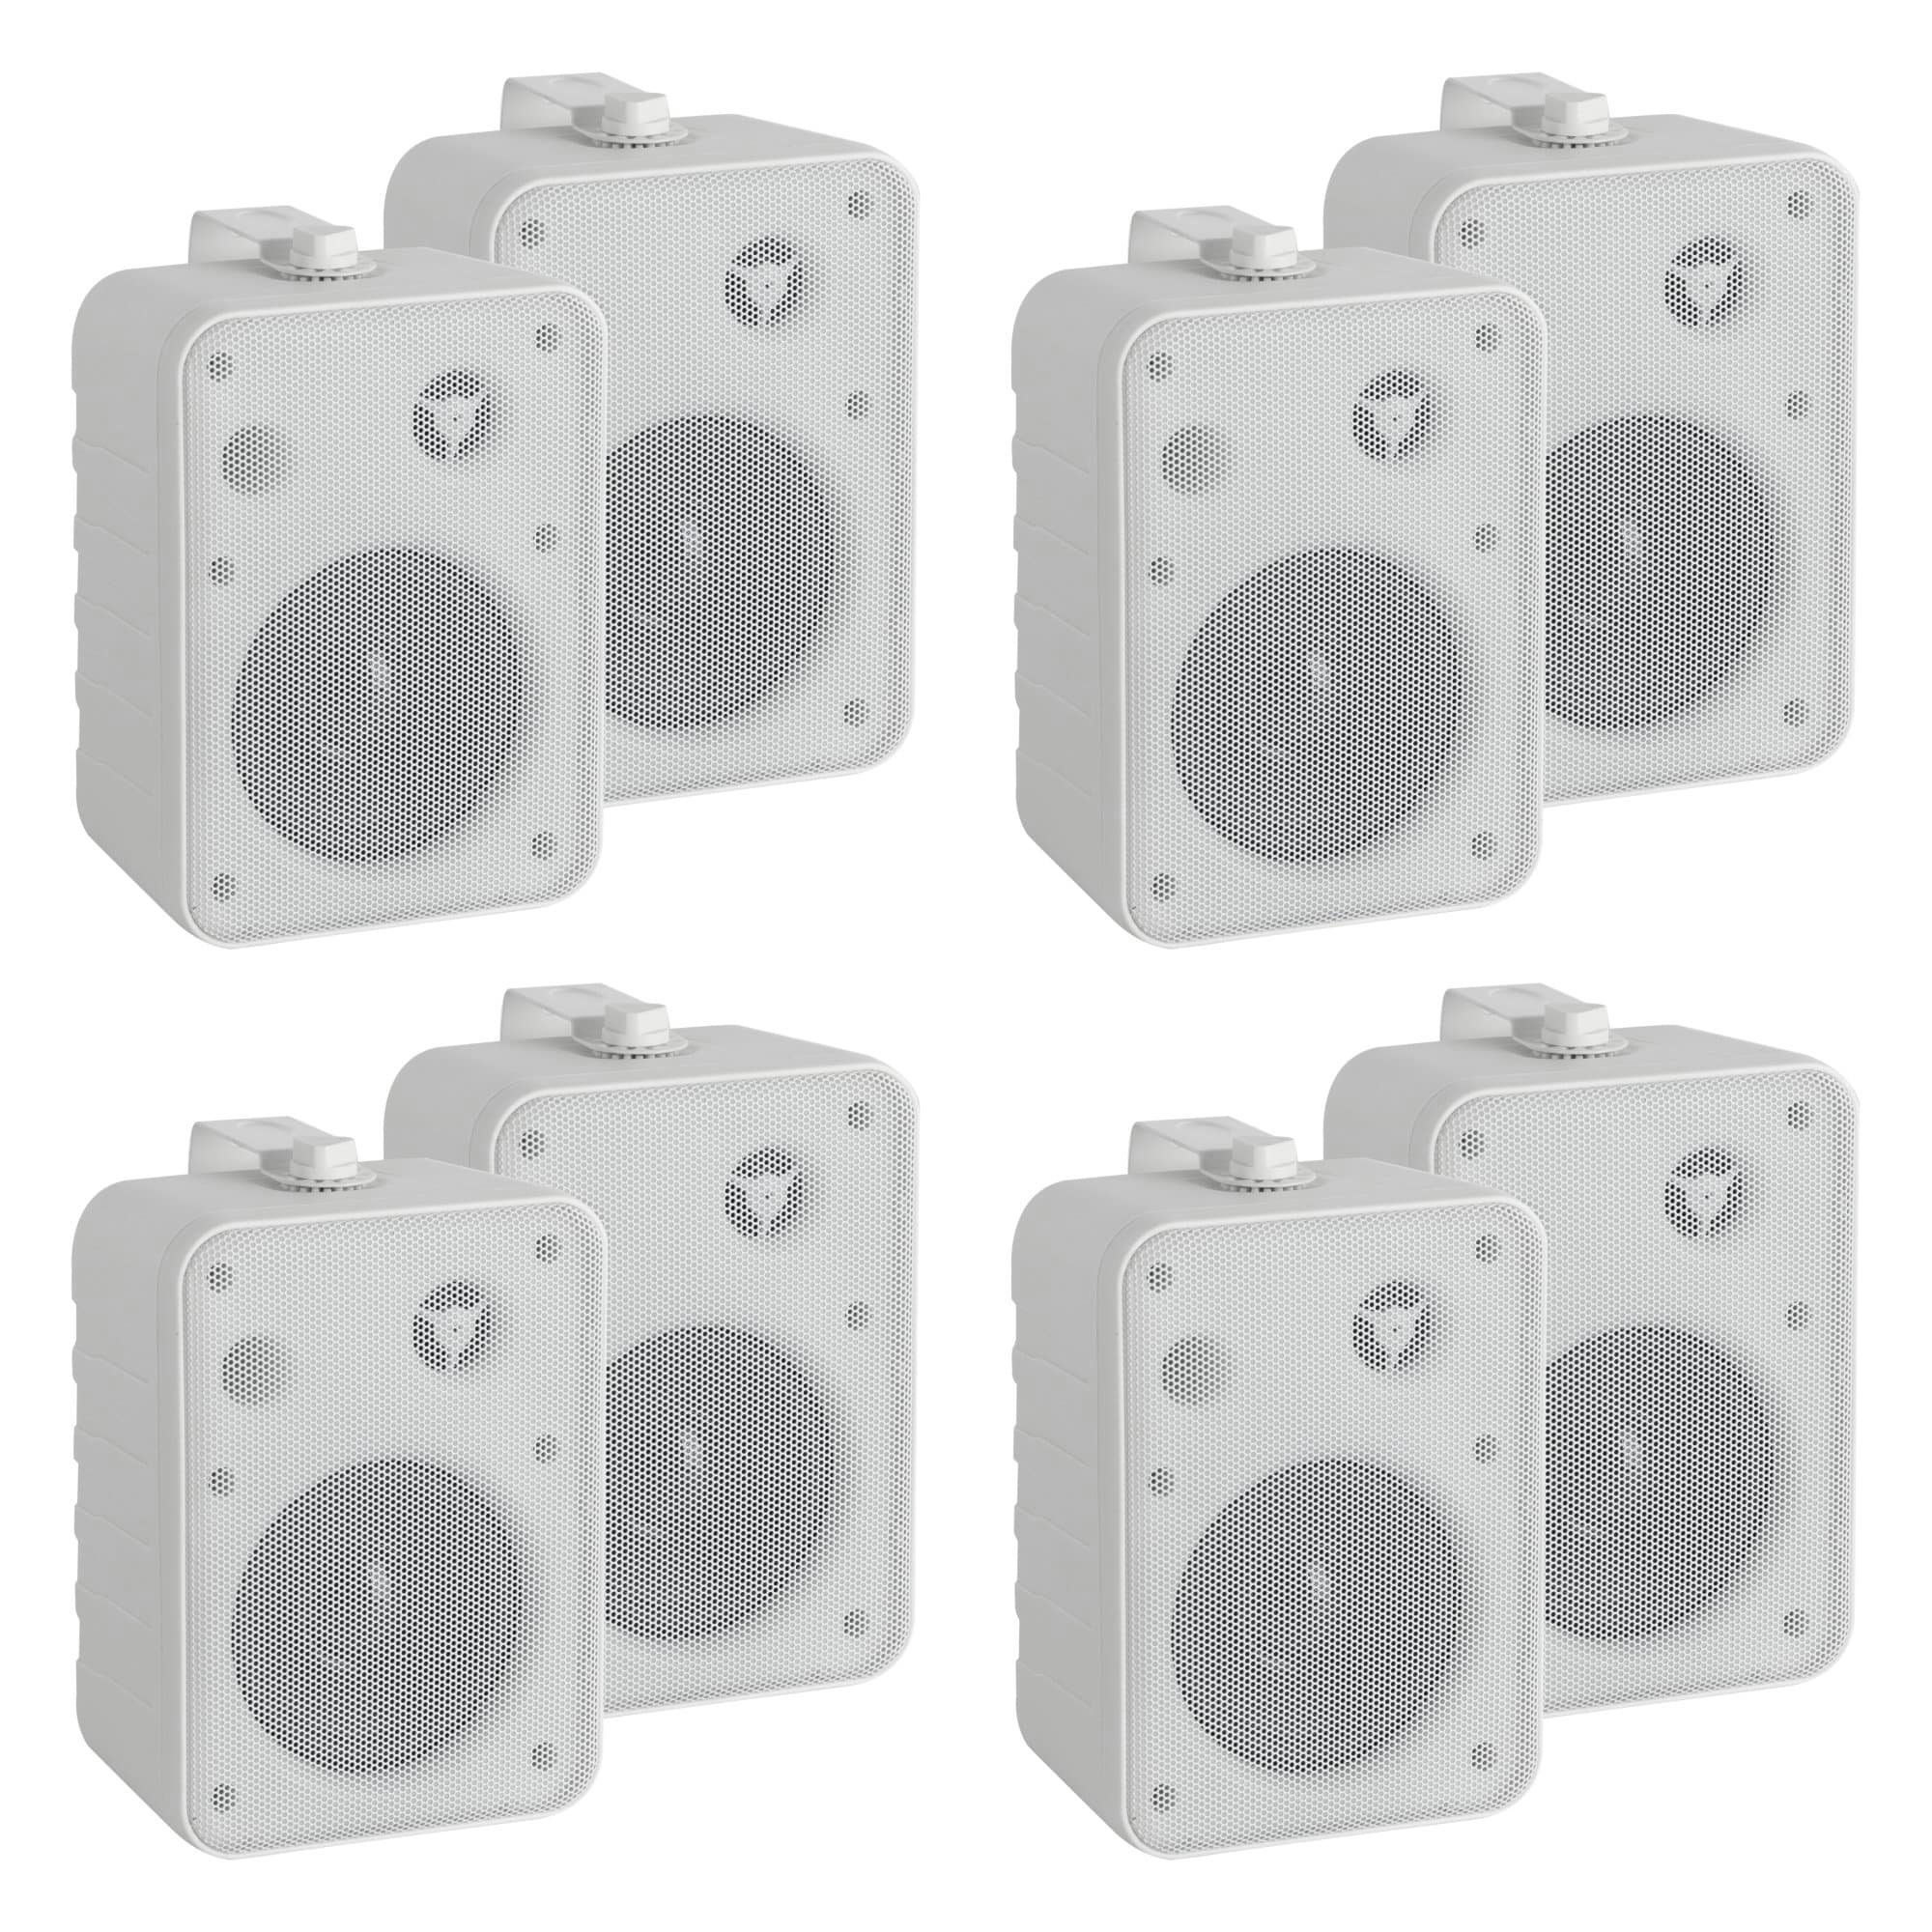 Studio Lautsprecherboxen Boxen oder für Weiß Installation, - McGrey HiFi-Anwendung) MKIII W, Lautsprecher (10 paar 4 One HiFi-Lautsprecher Control